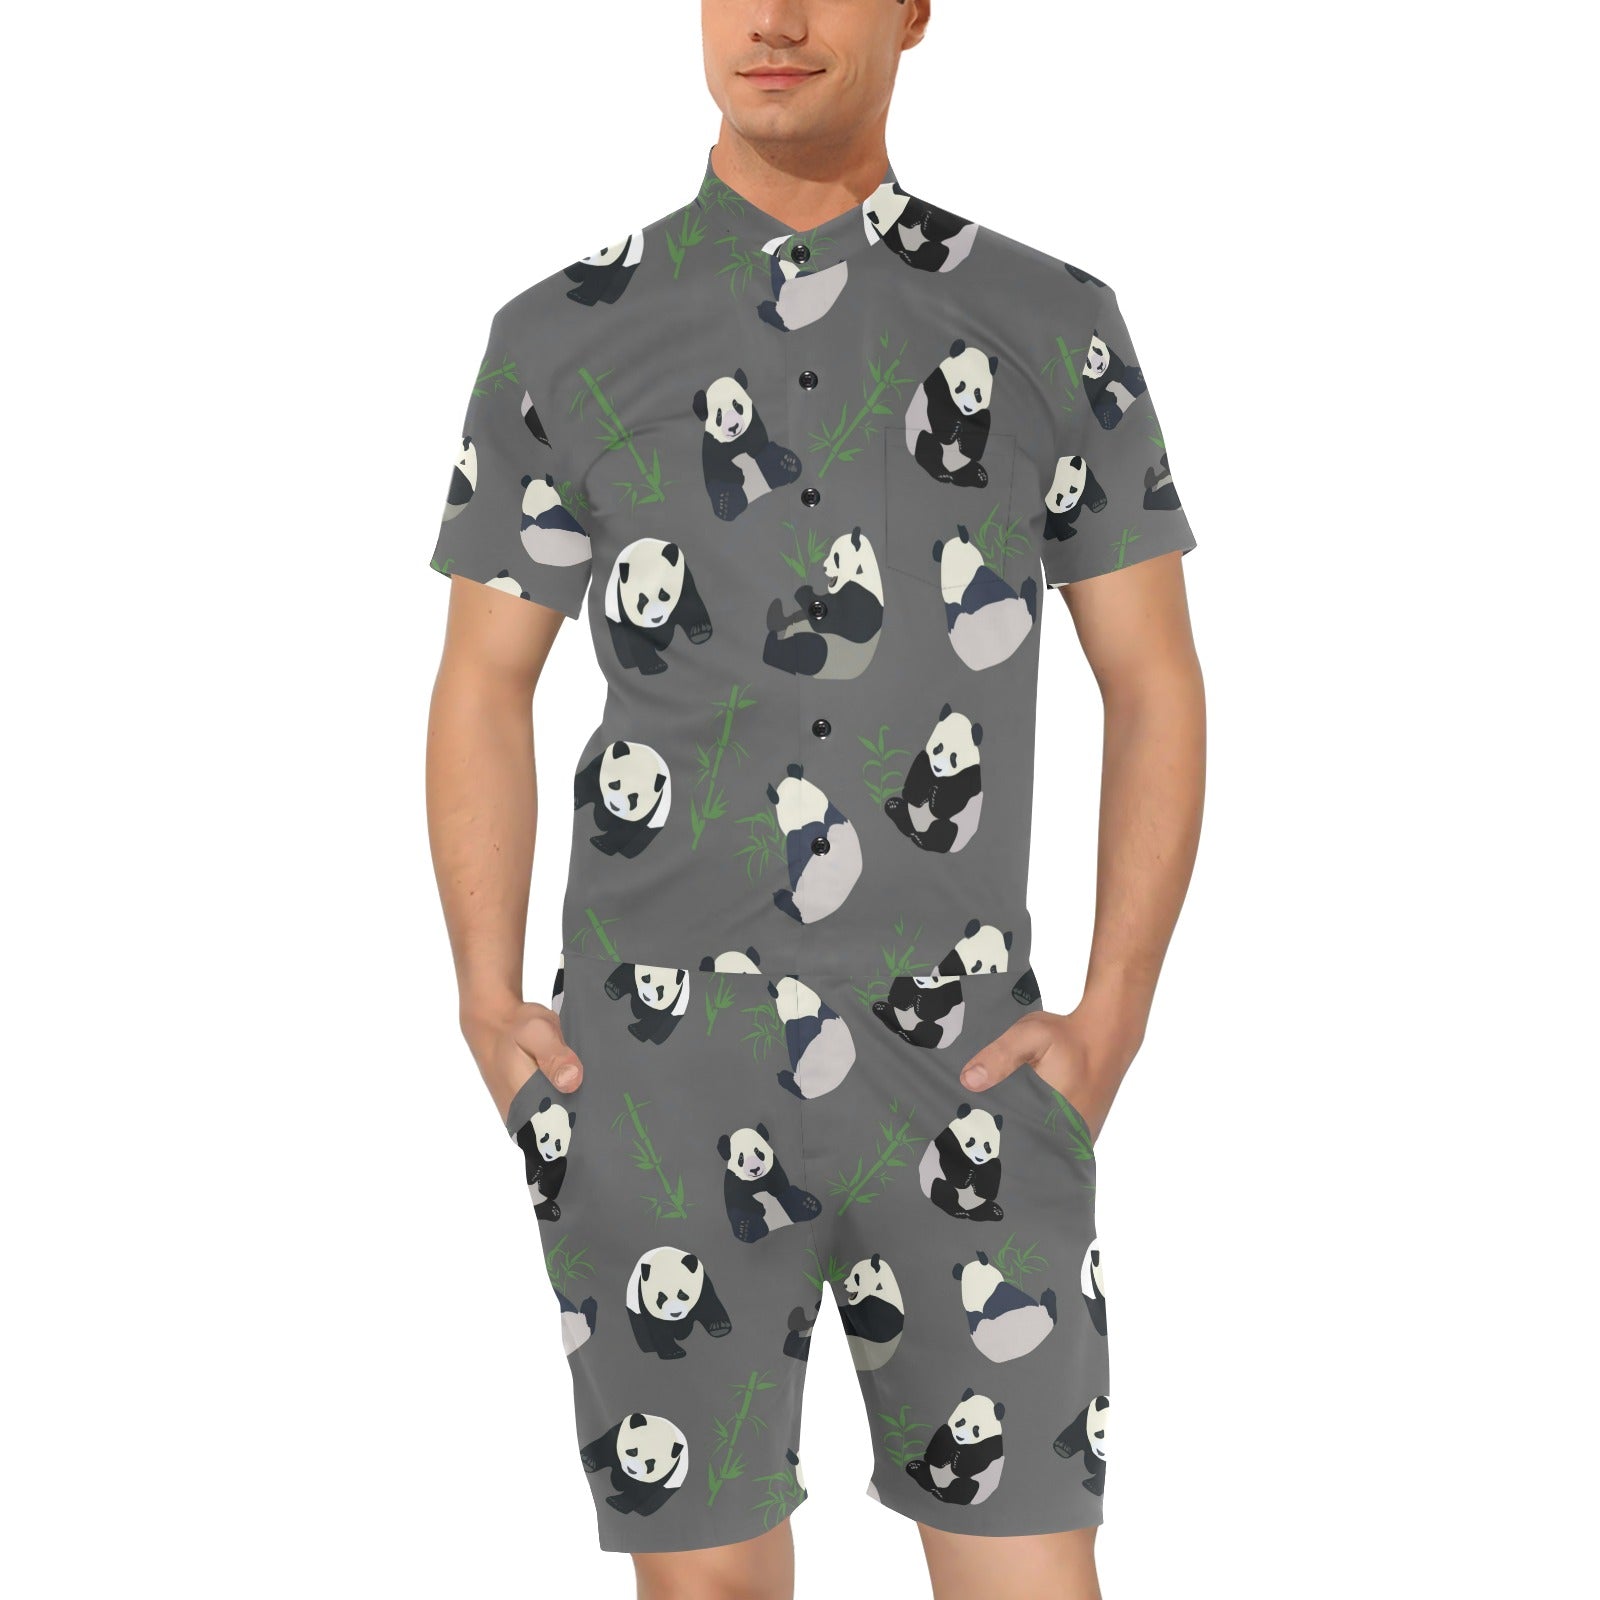 Panda Pattern Print Design A06 Men's Romper